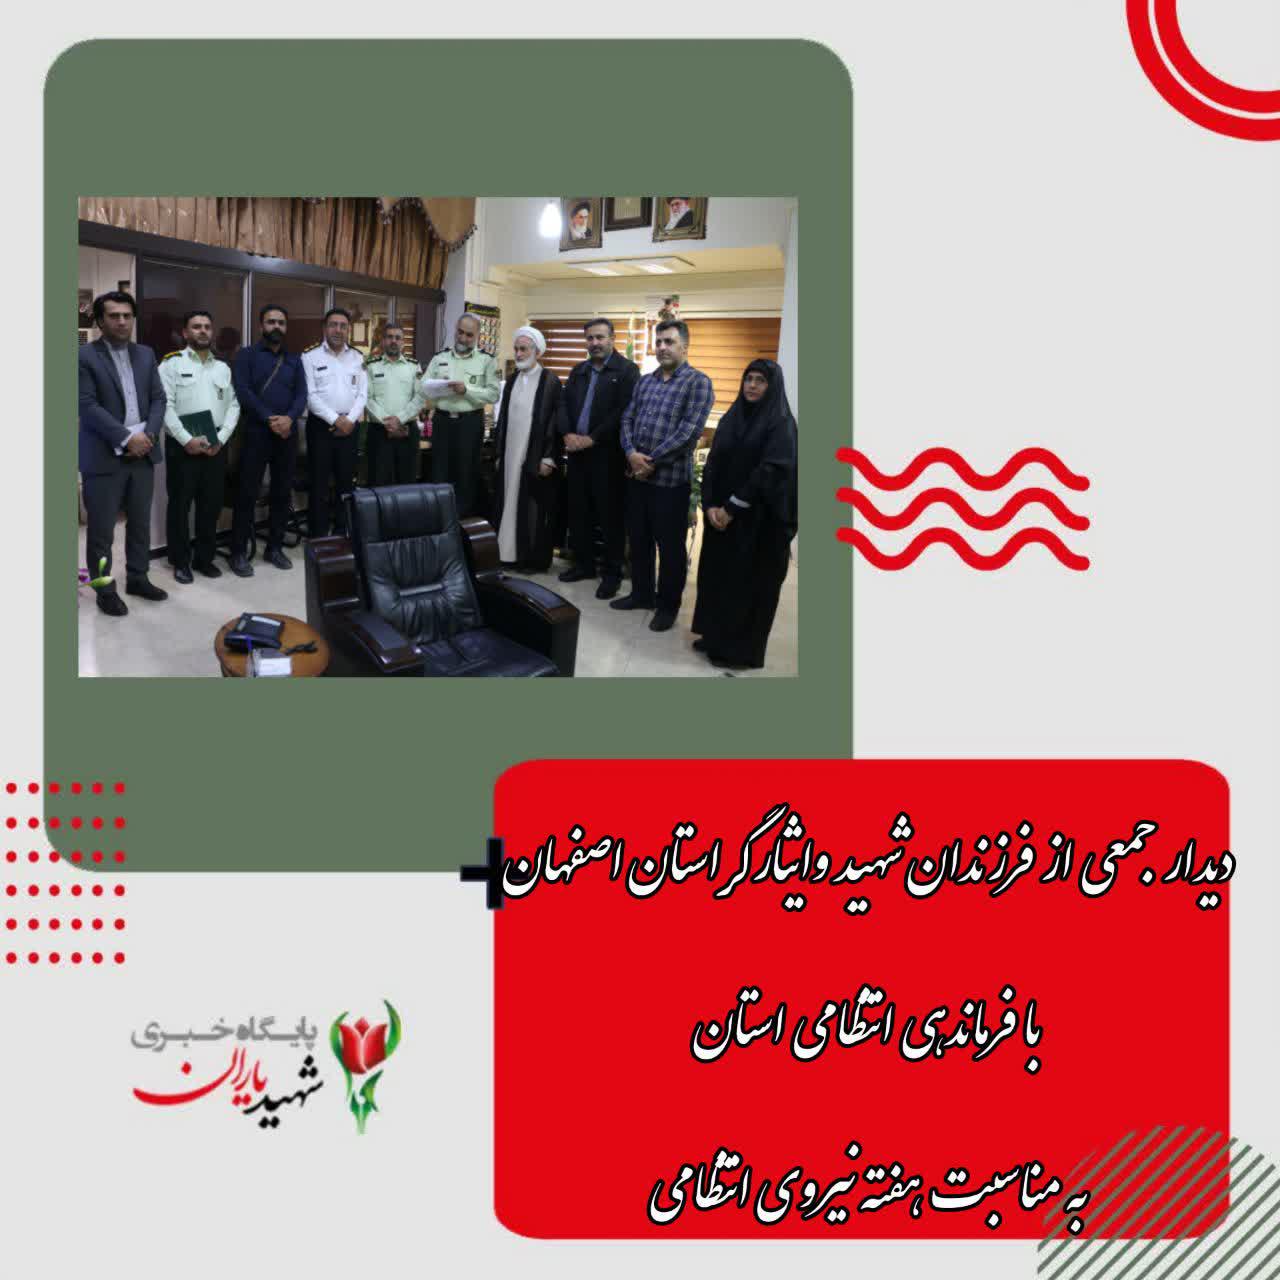 دیدار جمعی از فرزندان شهید و ایثارگراستان با فرماندهی انتظامی استان به مناسبت هفته نیروی انتظامی